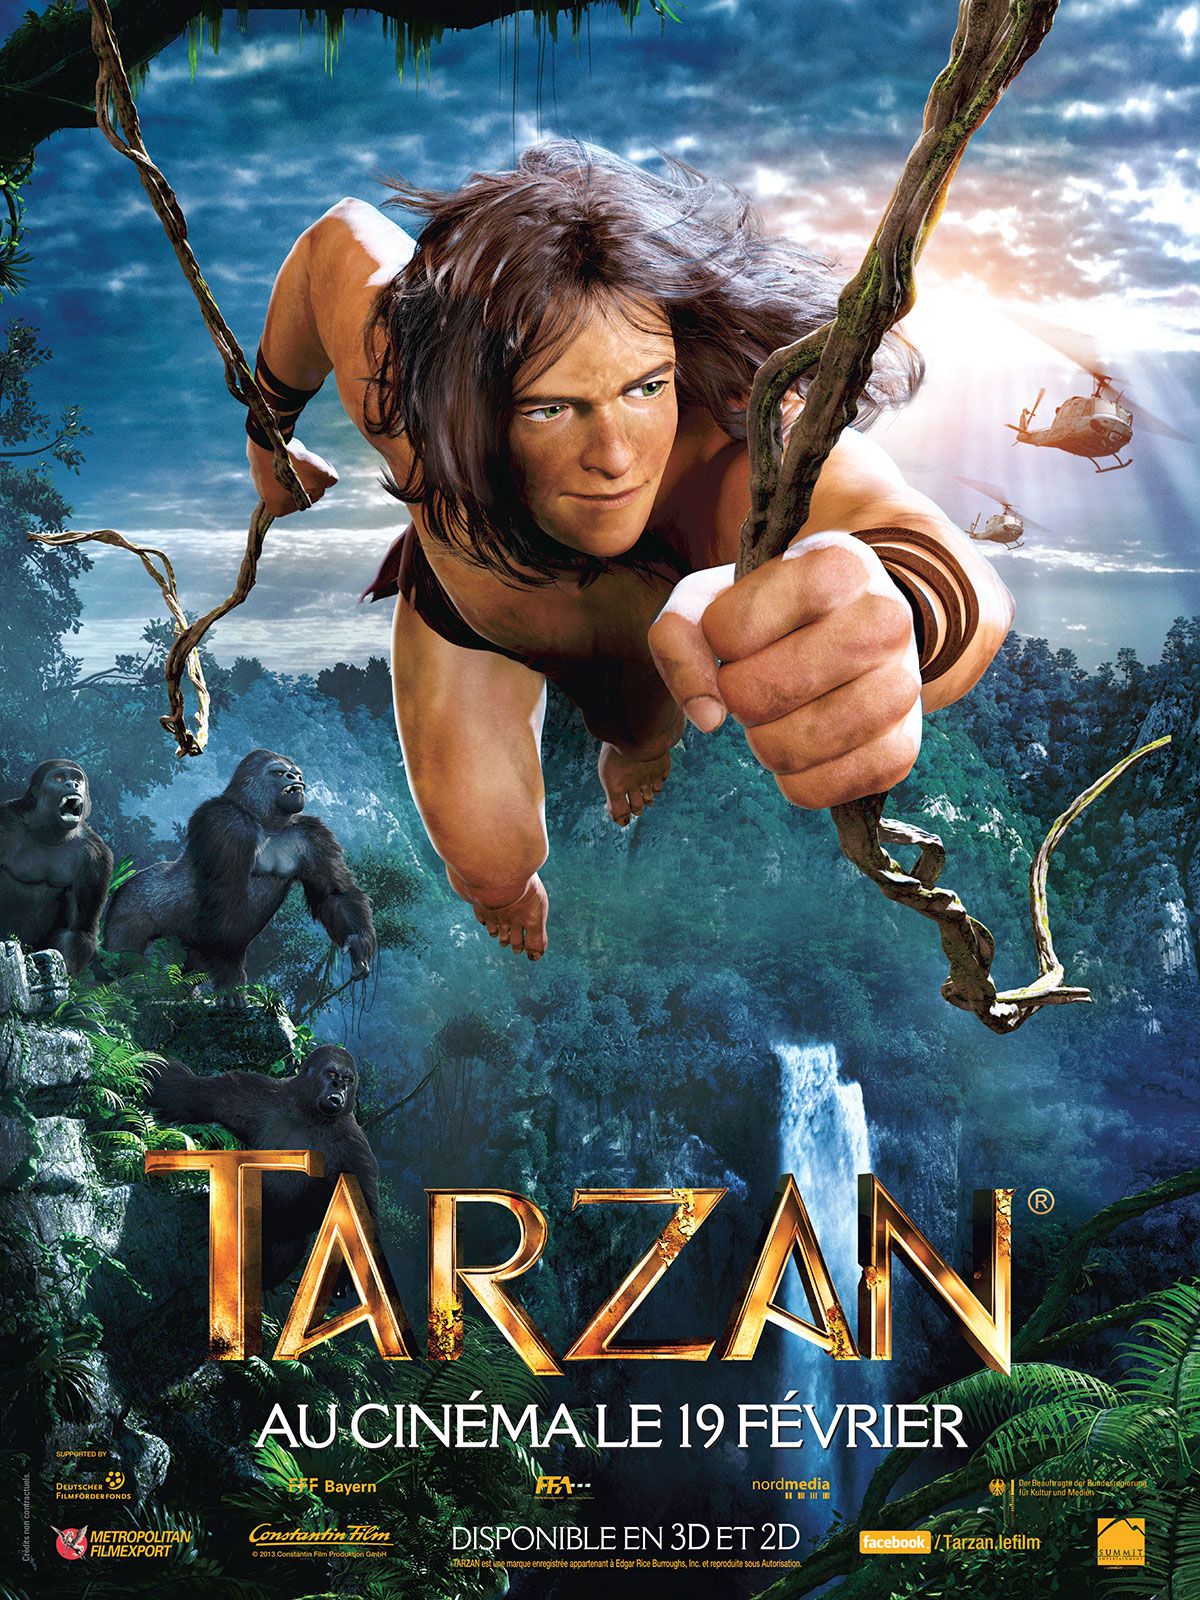 'La leyenda de Tarzán': El tráiler IMAX de la película nos enseña al nuevo rey de la selva ...